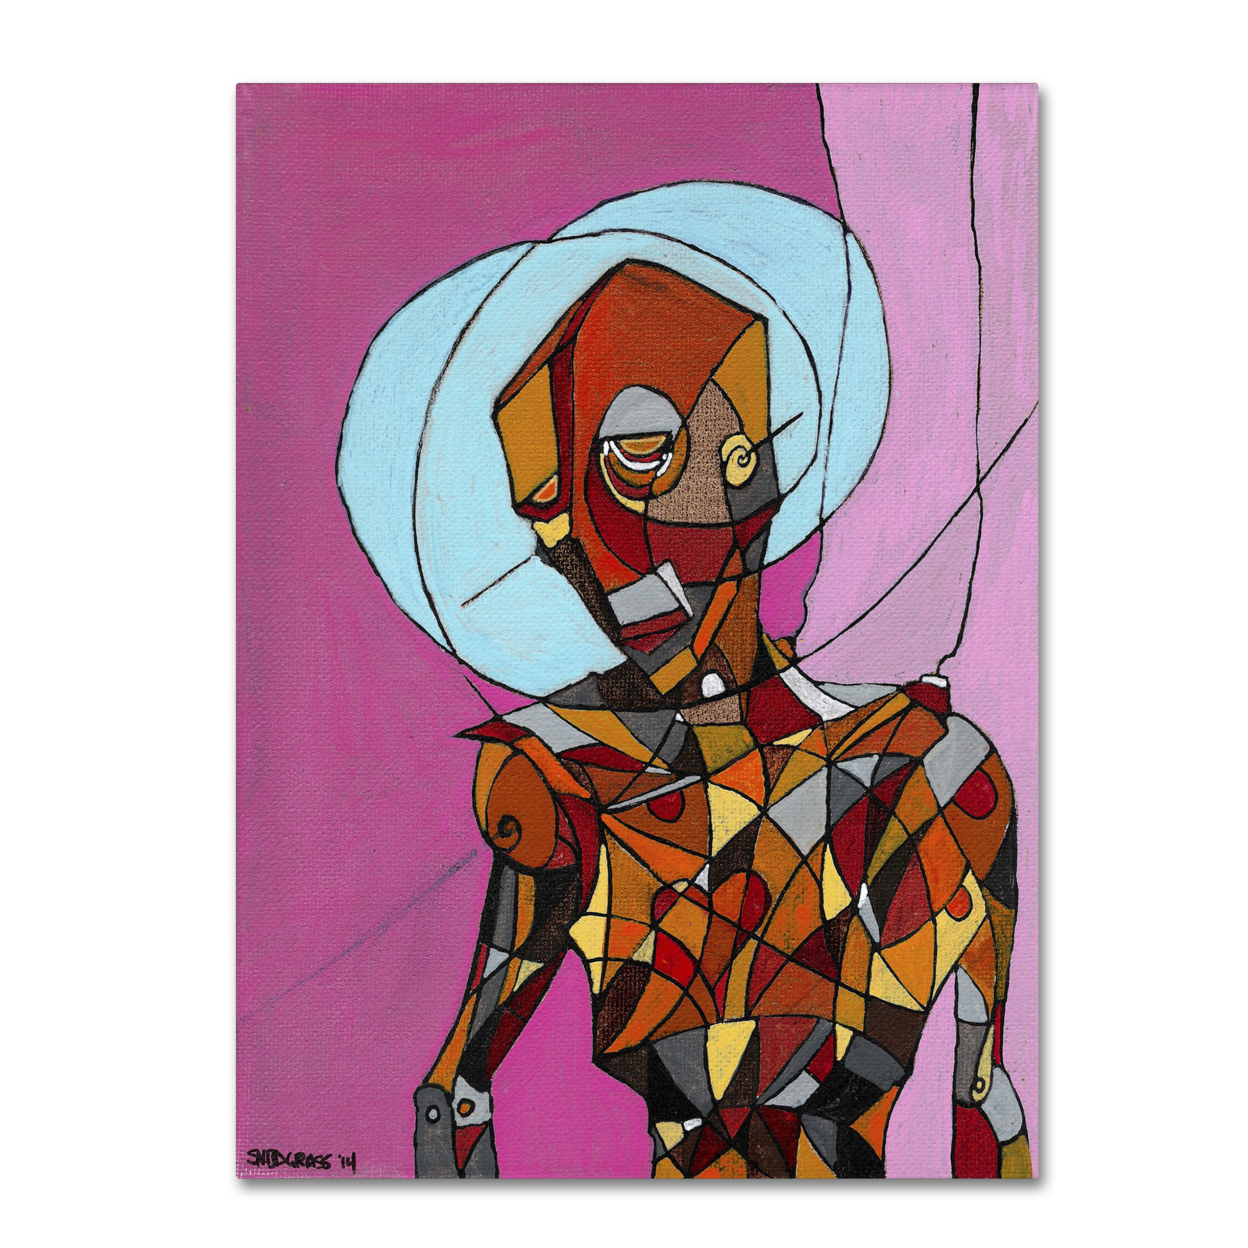 Craig Snodgrass 'Segmented Man I' Canvas Wall Art 35 X 47 Inches